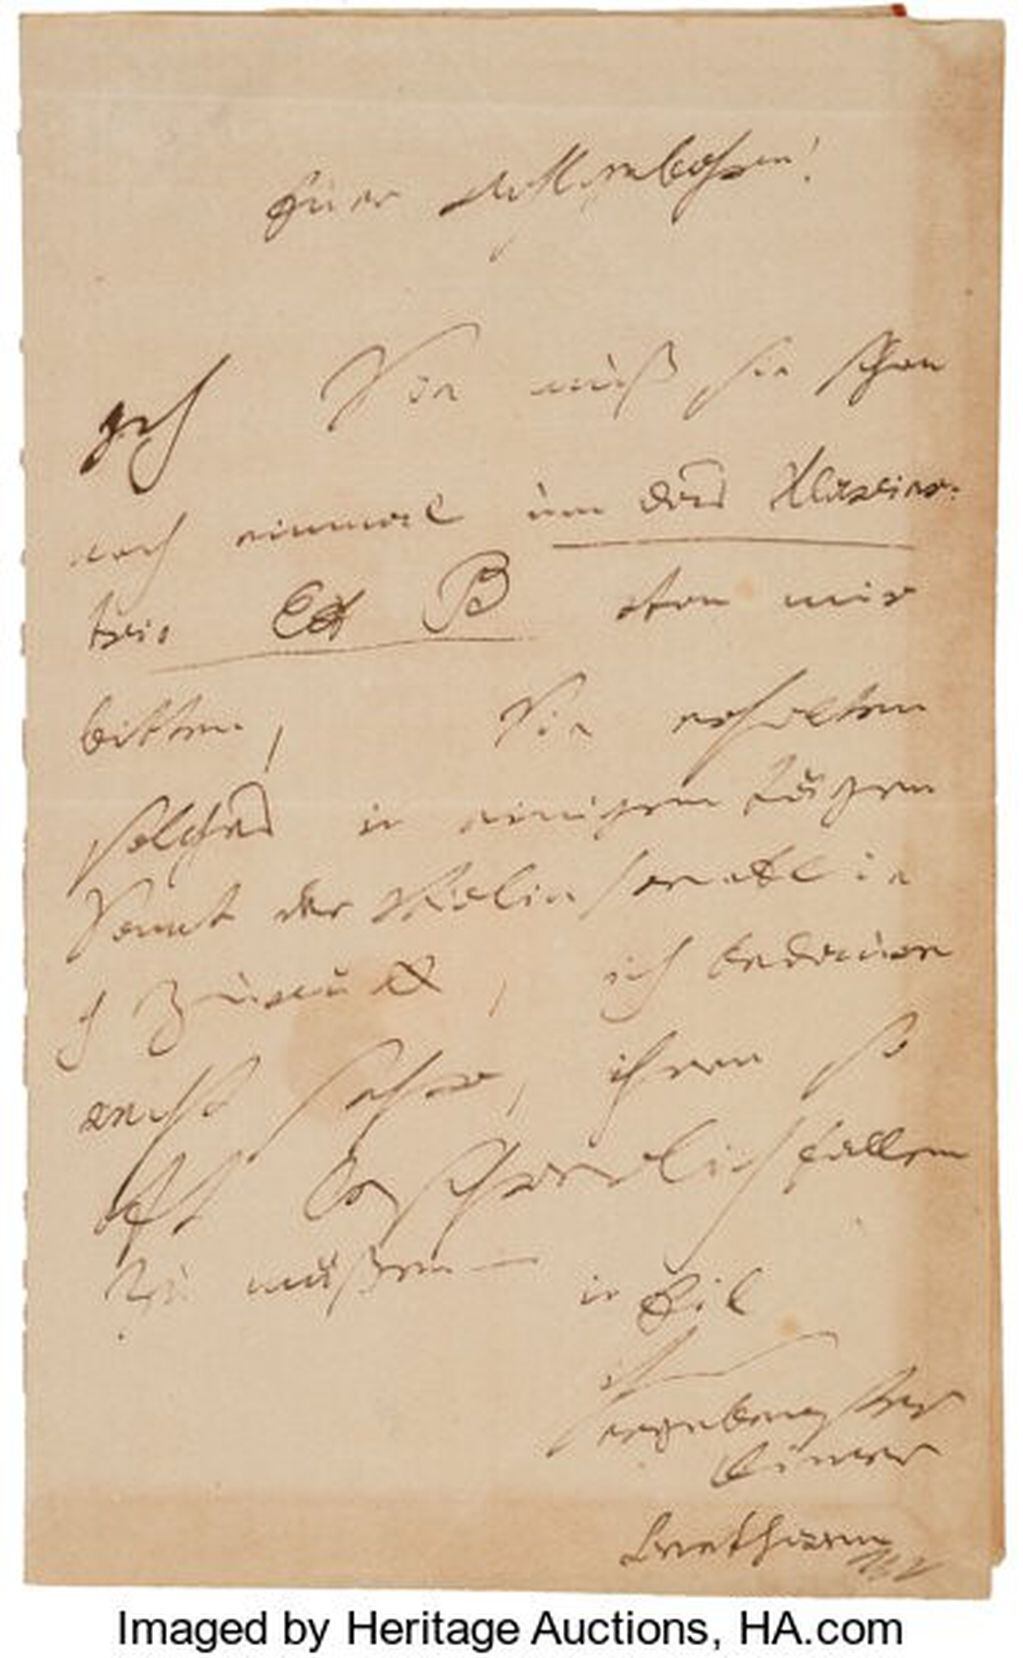 Una carta del compositor alemán Ludwig van Beethoven (1770-1827) se subastó en Estados Unidos por 275.000 dólares